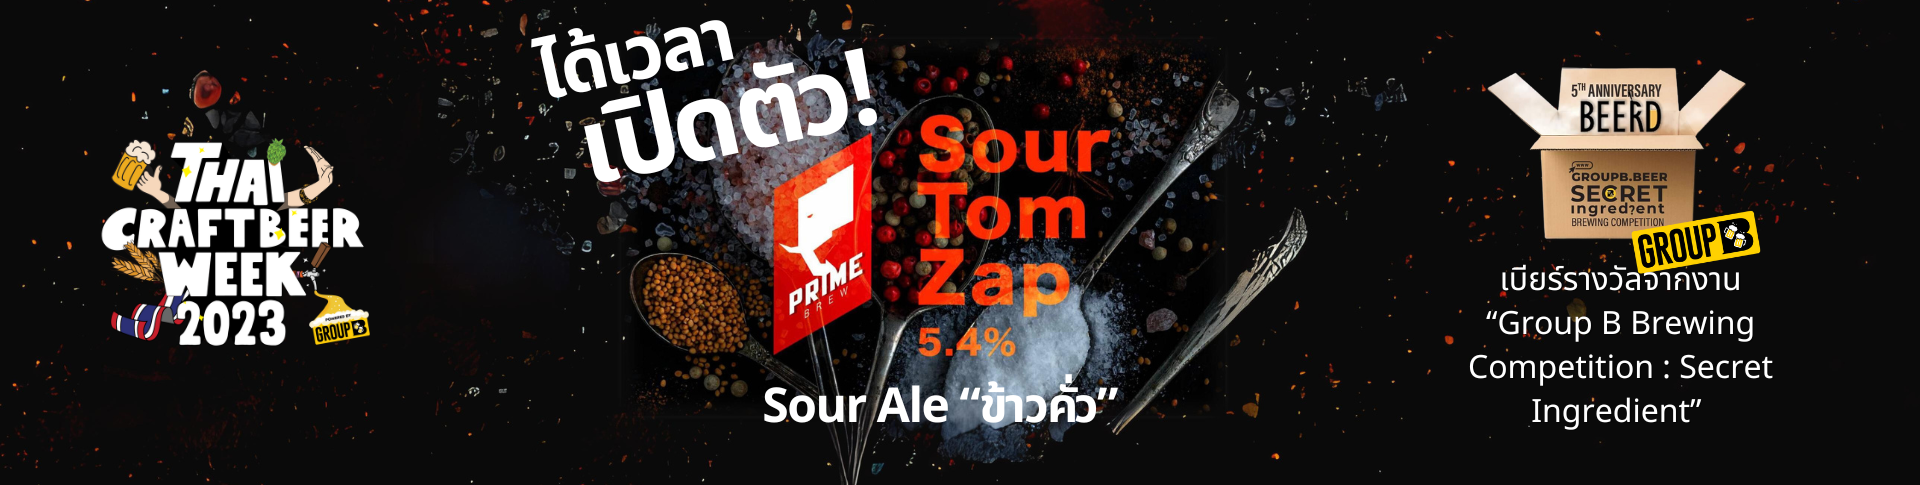 เปิดตัวเบียร์ “SourTom Zap”Sour Ale ข้าวคั่ว @Mash